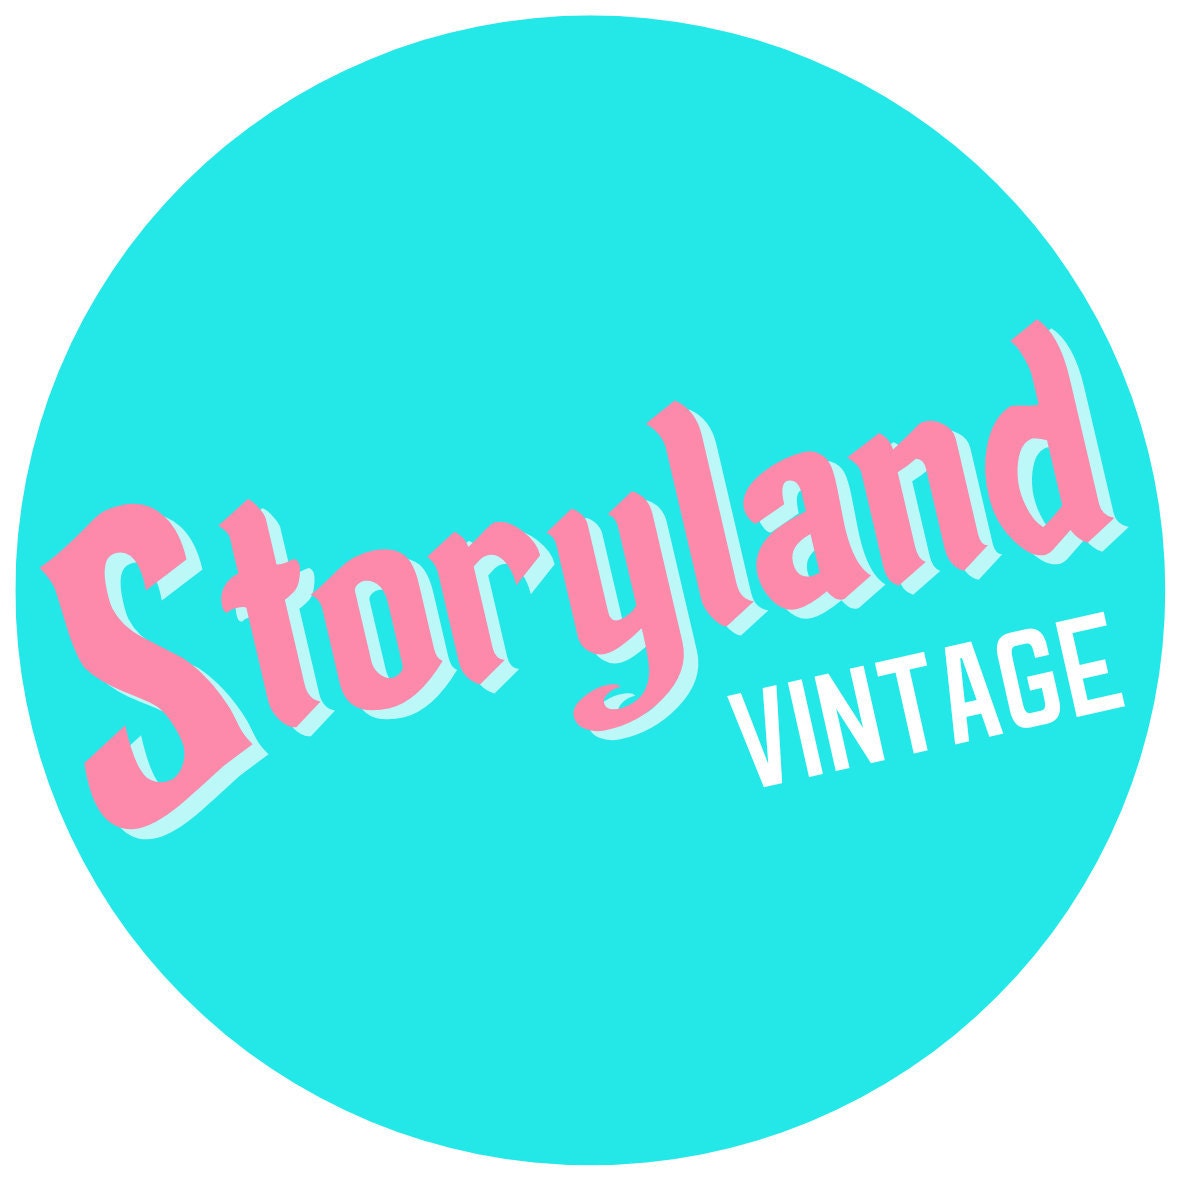 StorylandVintage